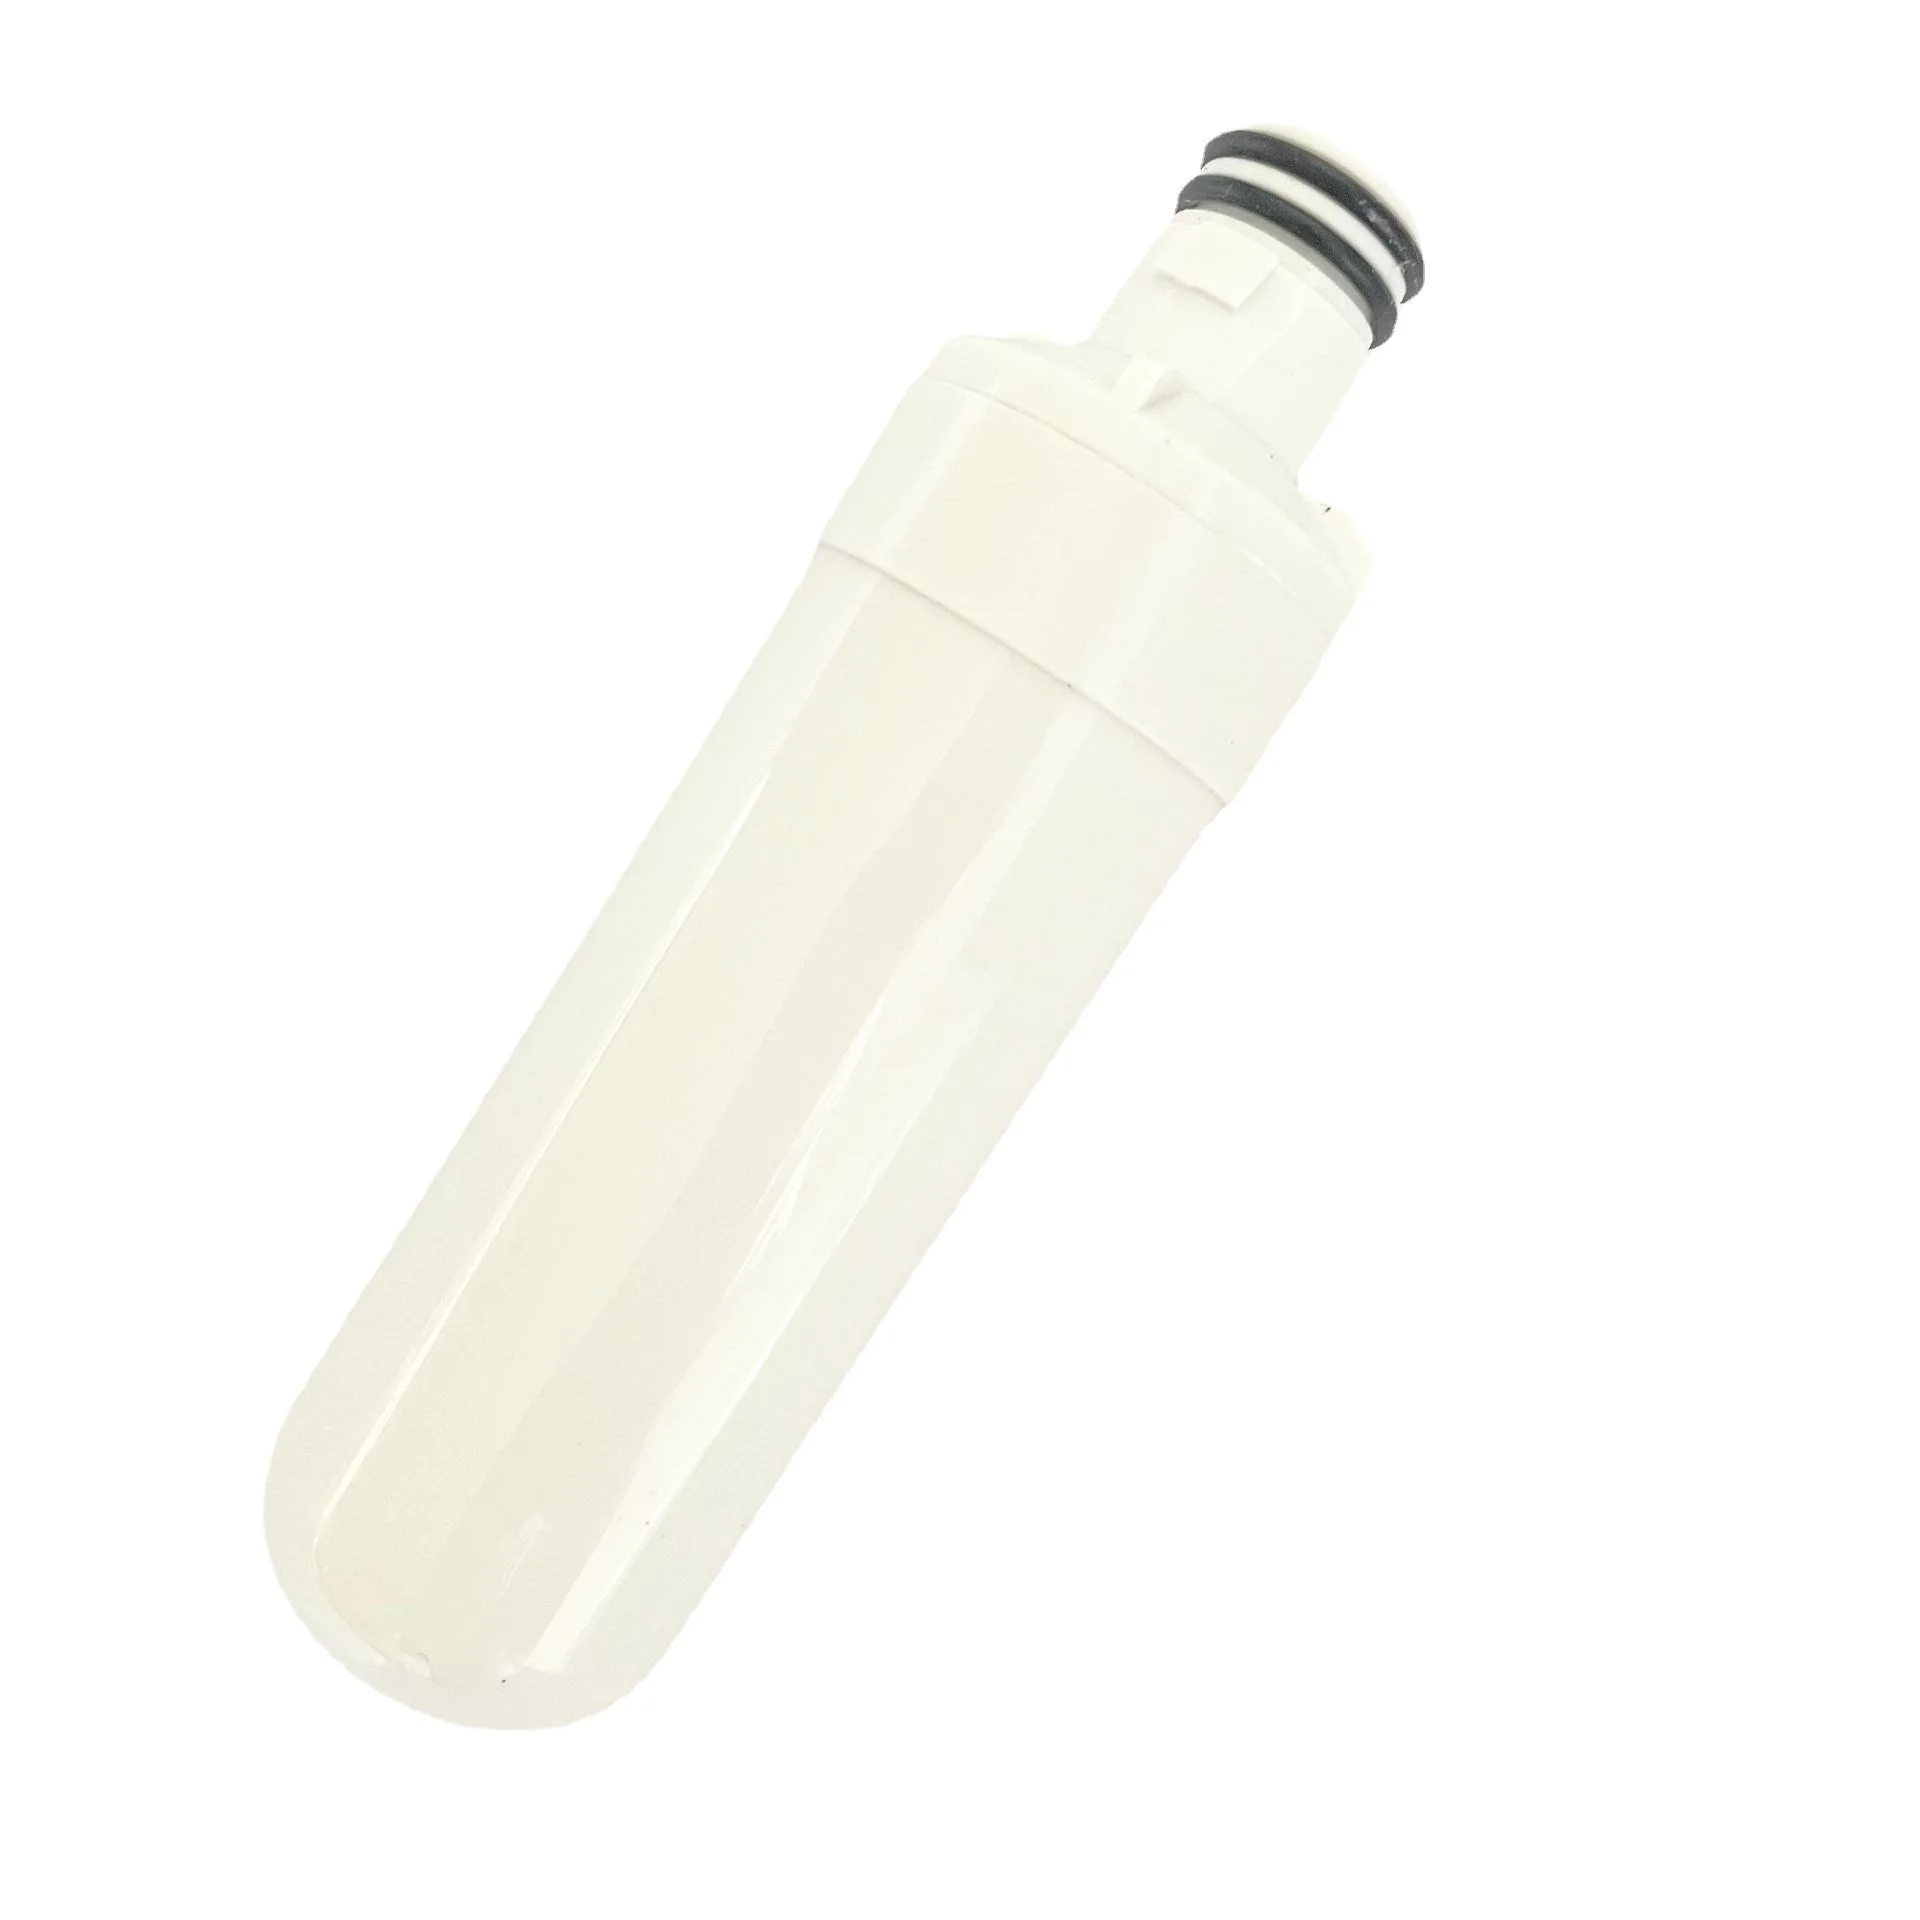 2ШТ Картридж для фильтра холодильника Фильтр для воды Бытовой Очиститель воды Система фильтров с восстановлением хлорамина цинка - 2